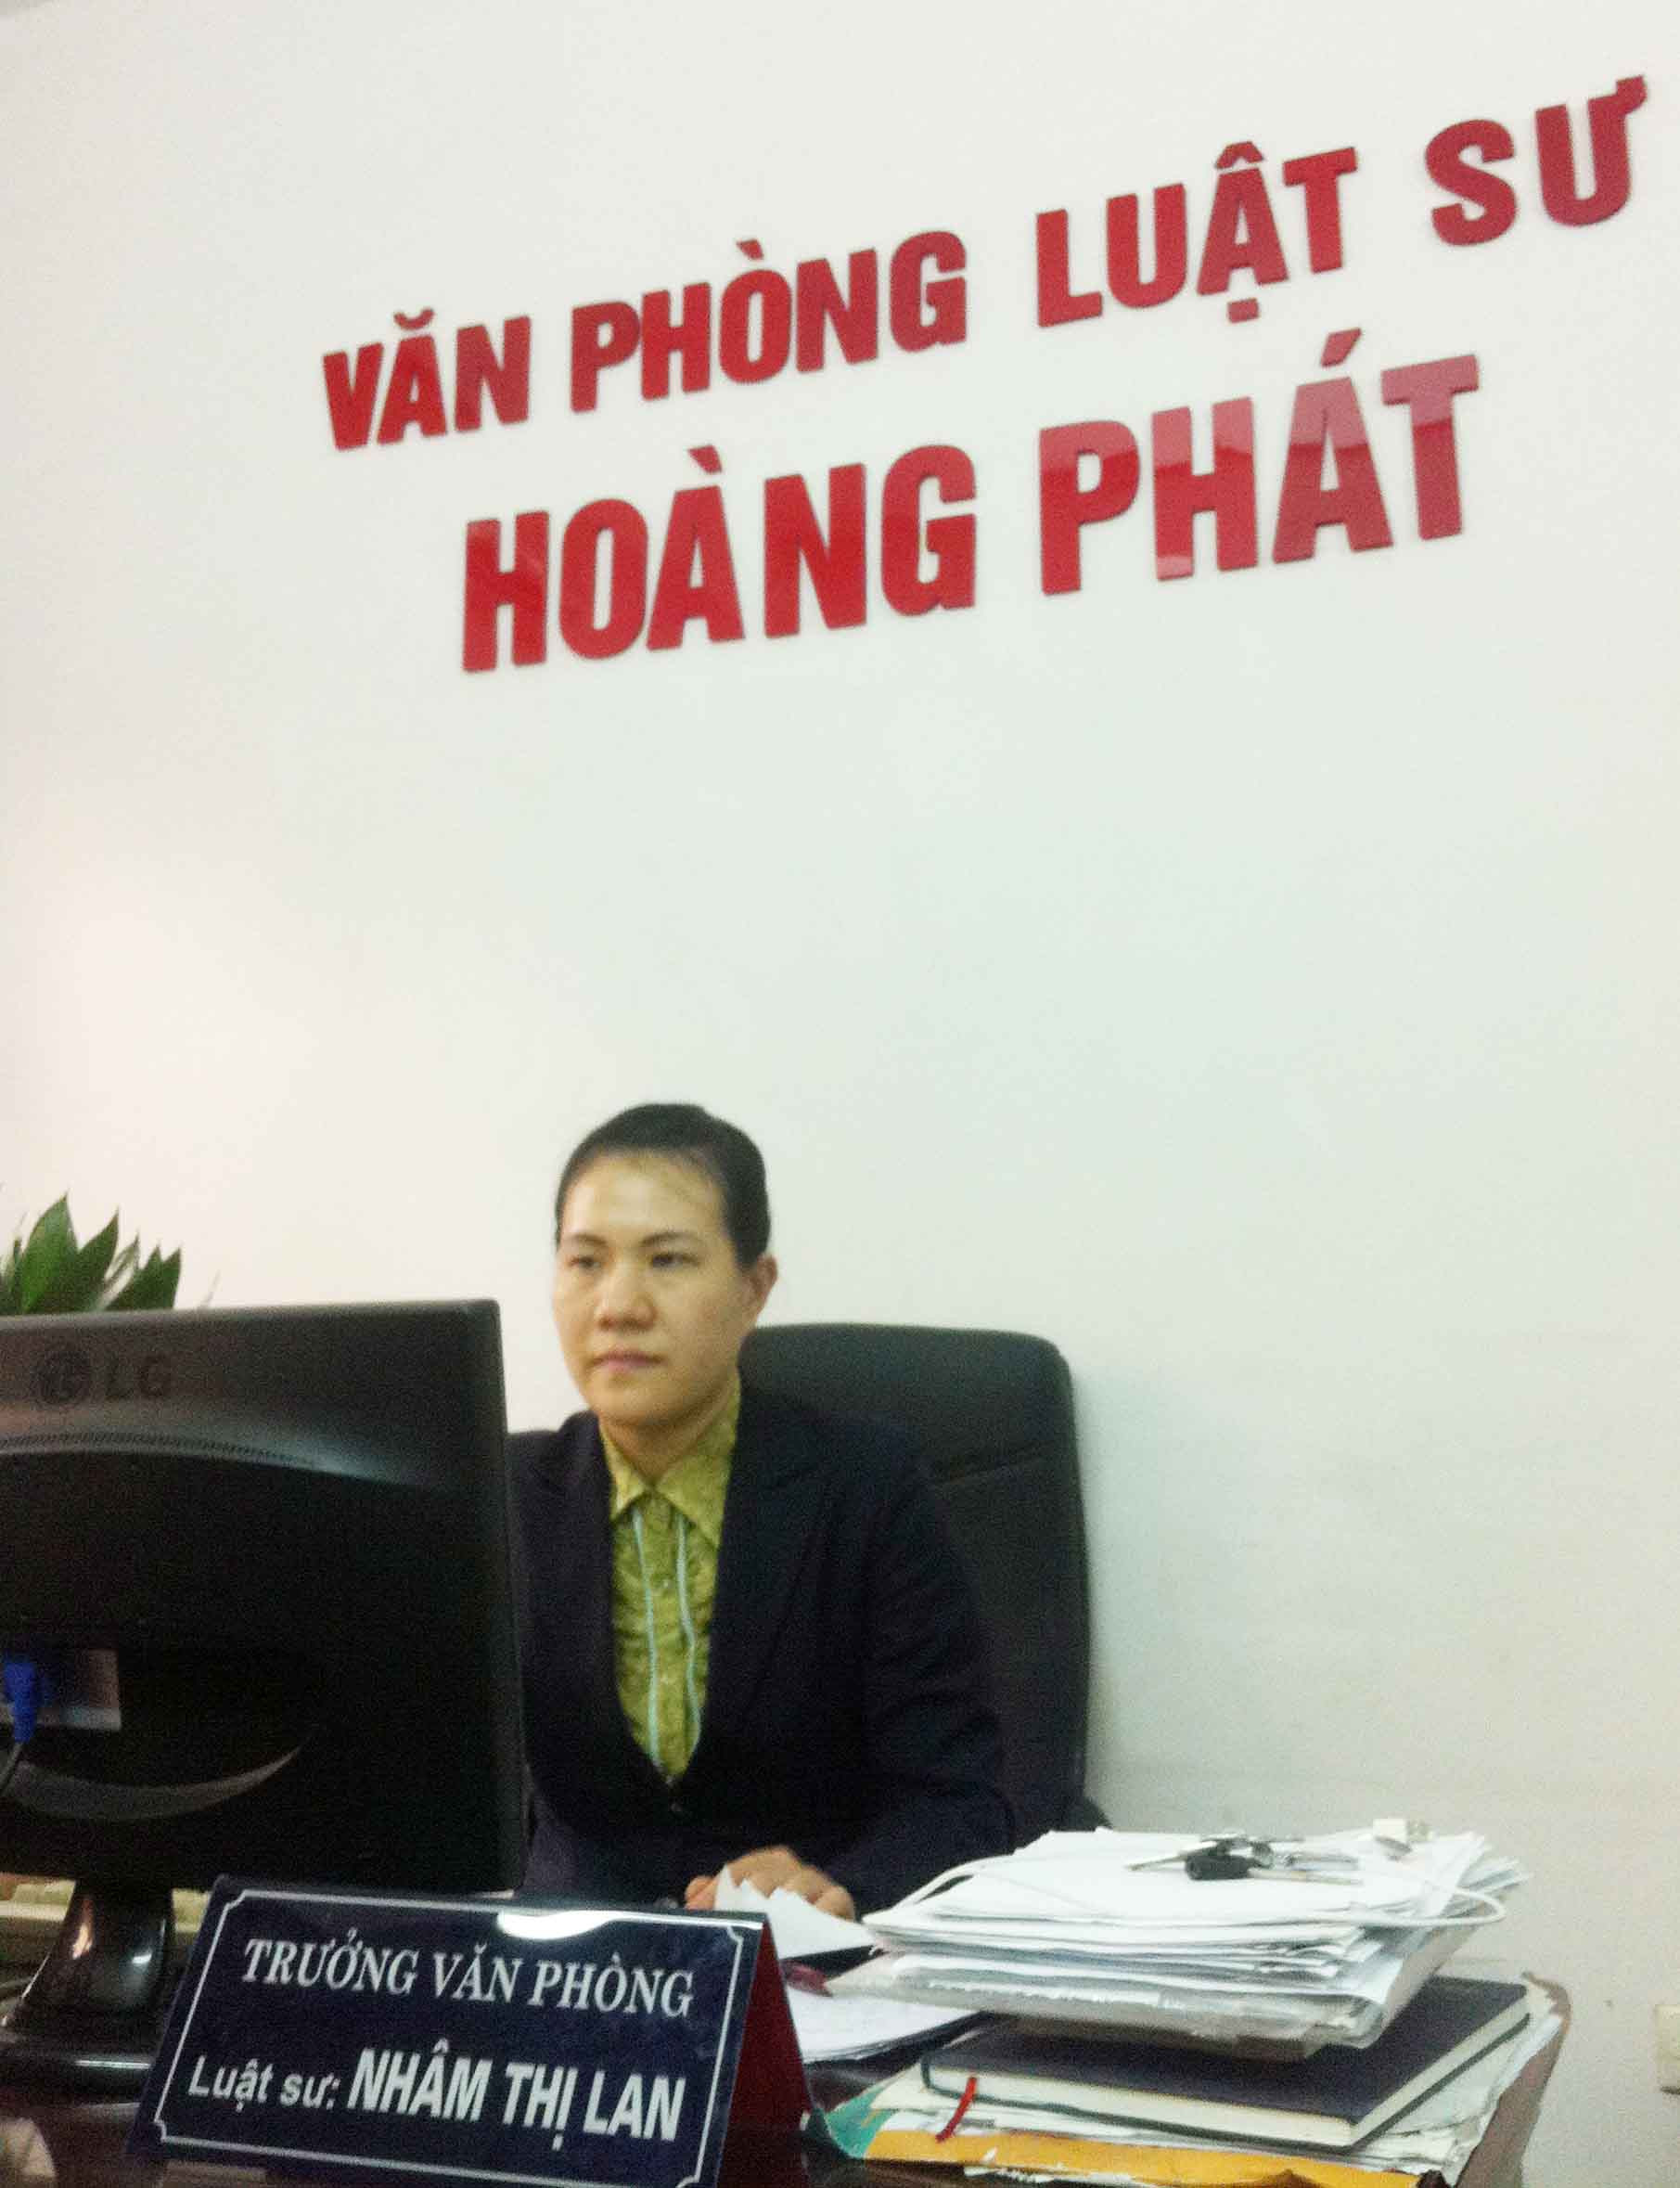 Luật sư Nhâm Thị Lan, Trưởng VPLS Hoàng Phát: Xử phạt xe không chính chủ, cần có lộ trình